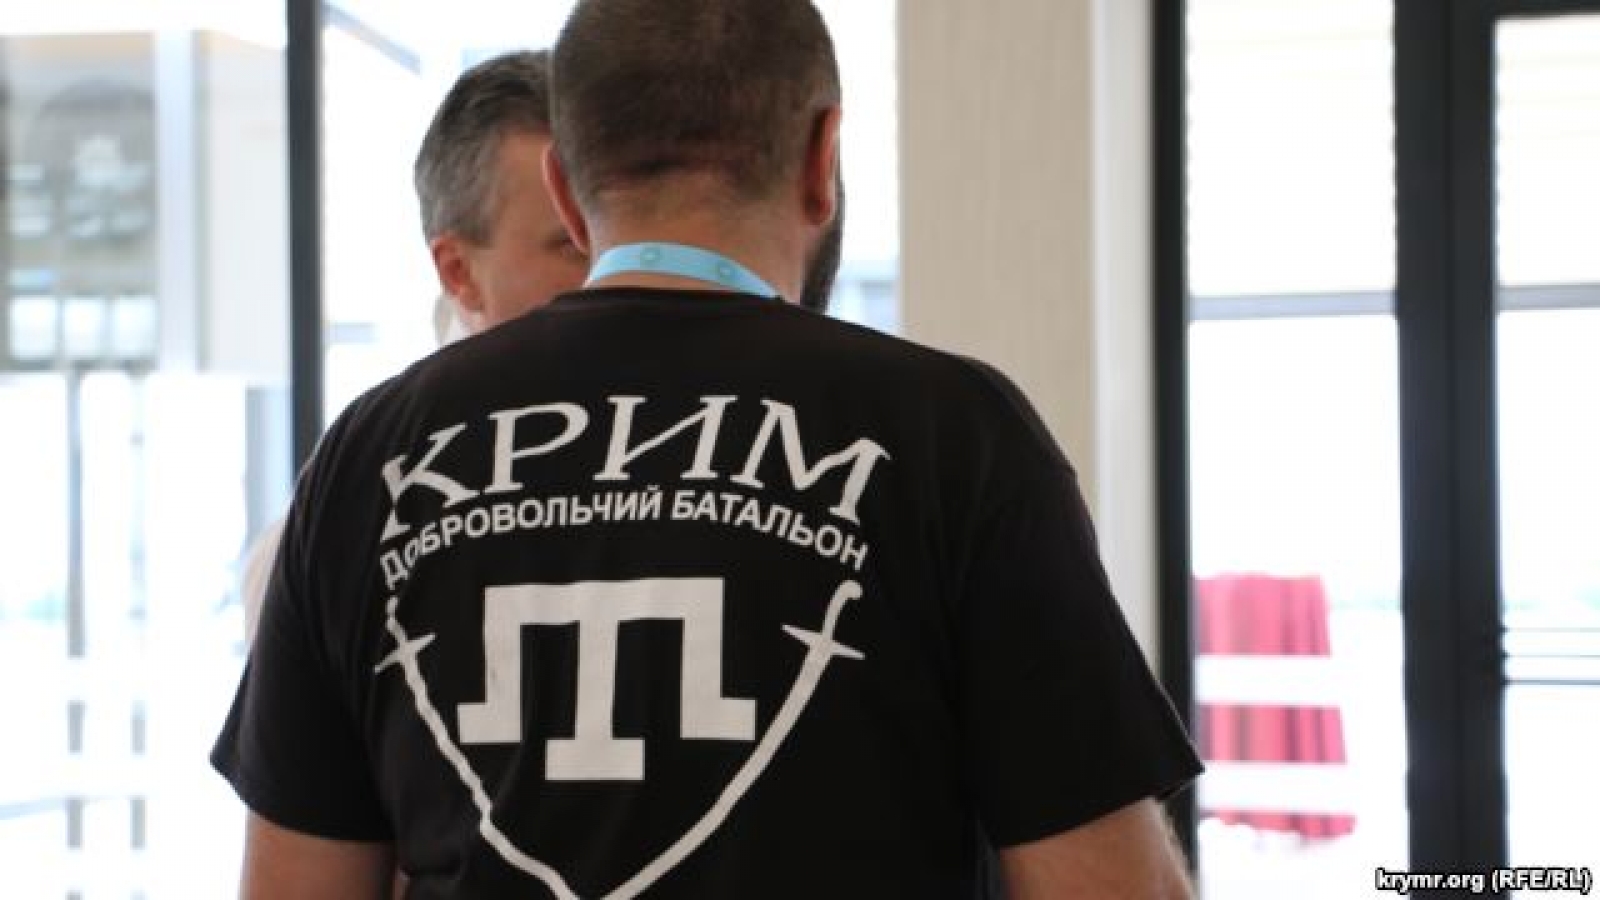 Прокуратура Киева провела обыски в батальоне Крым Новини України